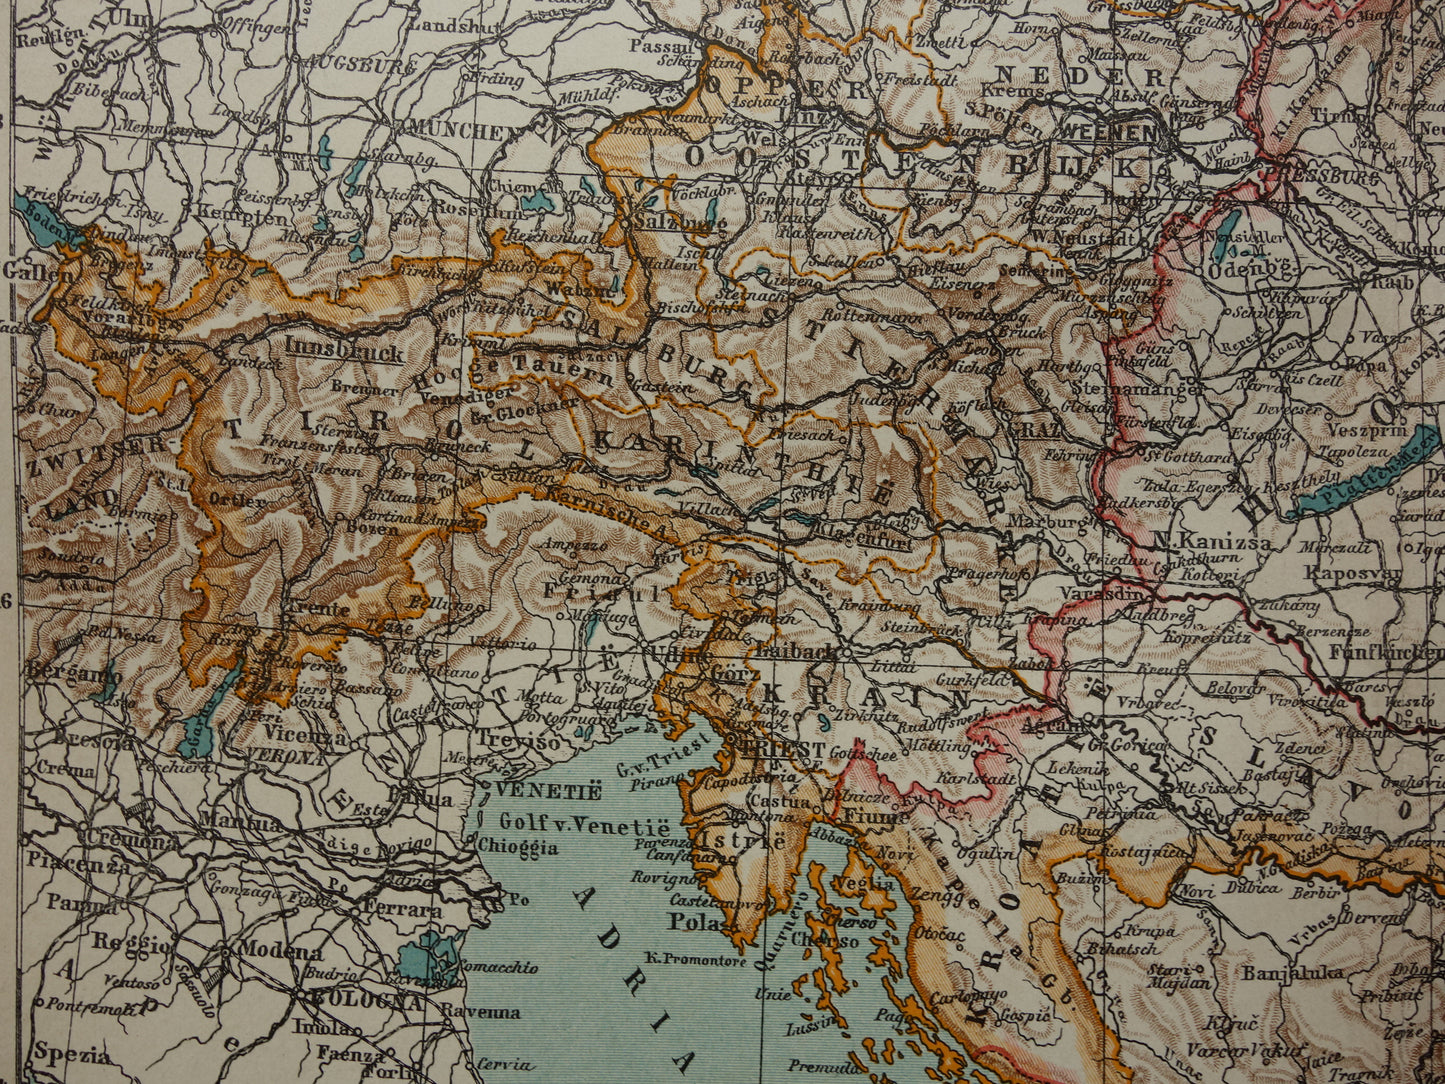 Kaart van Oostenrijk Hongarije uit 1910 originele oude vintage landkaart Tsjechië Slovenië Kroatië